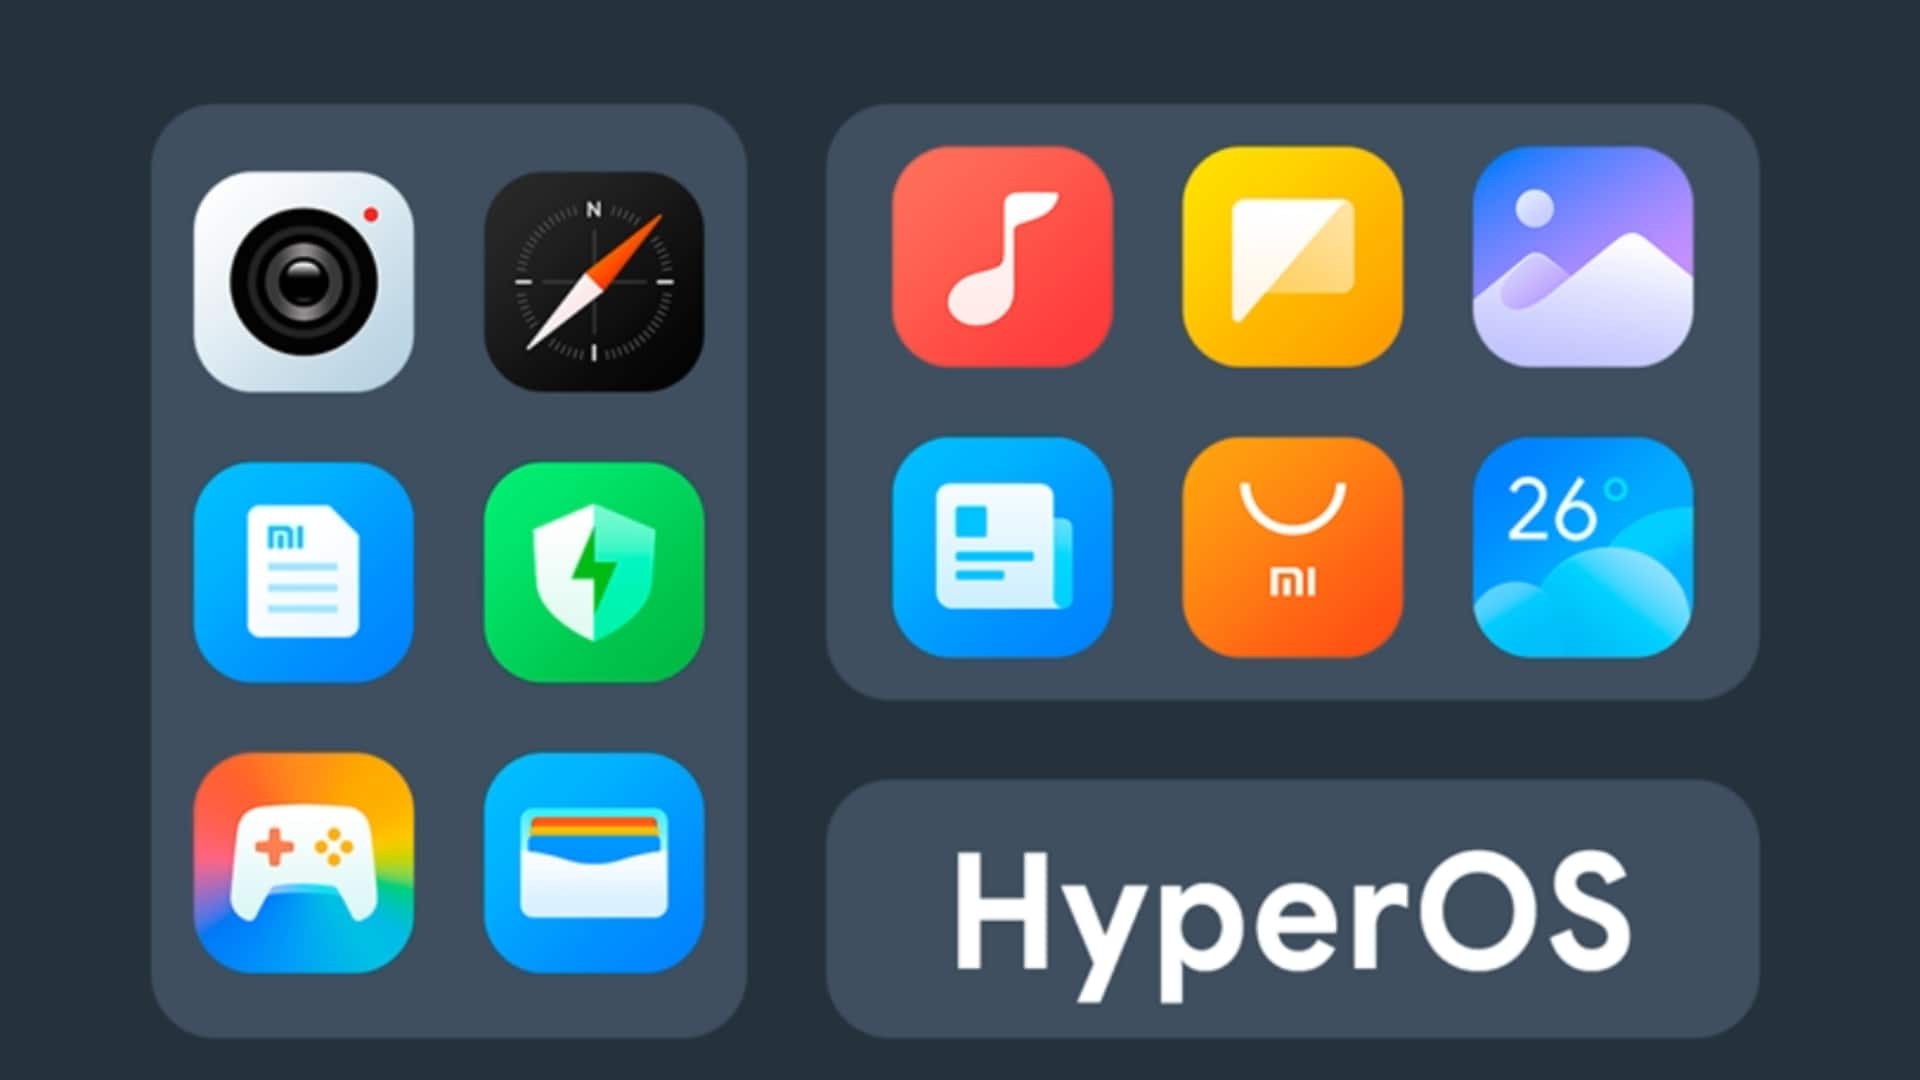 शाओमी का हाइपरOS क्या है और ये उपयोगकर्ता के अनुभव को कैसे बदलेगा?